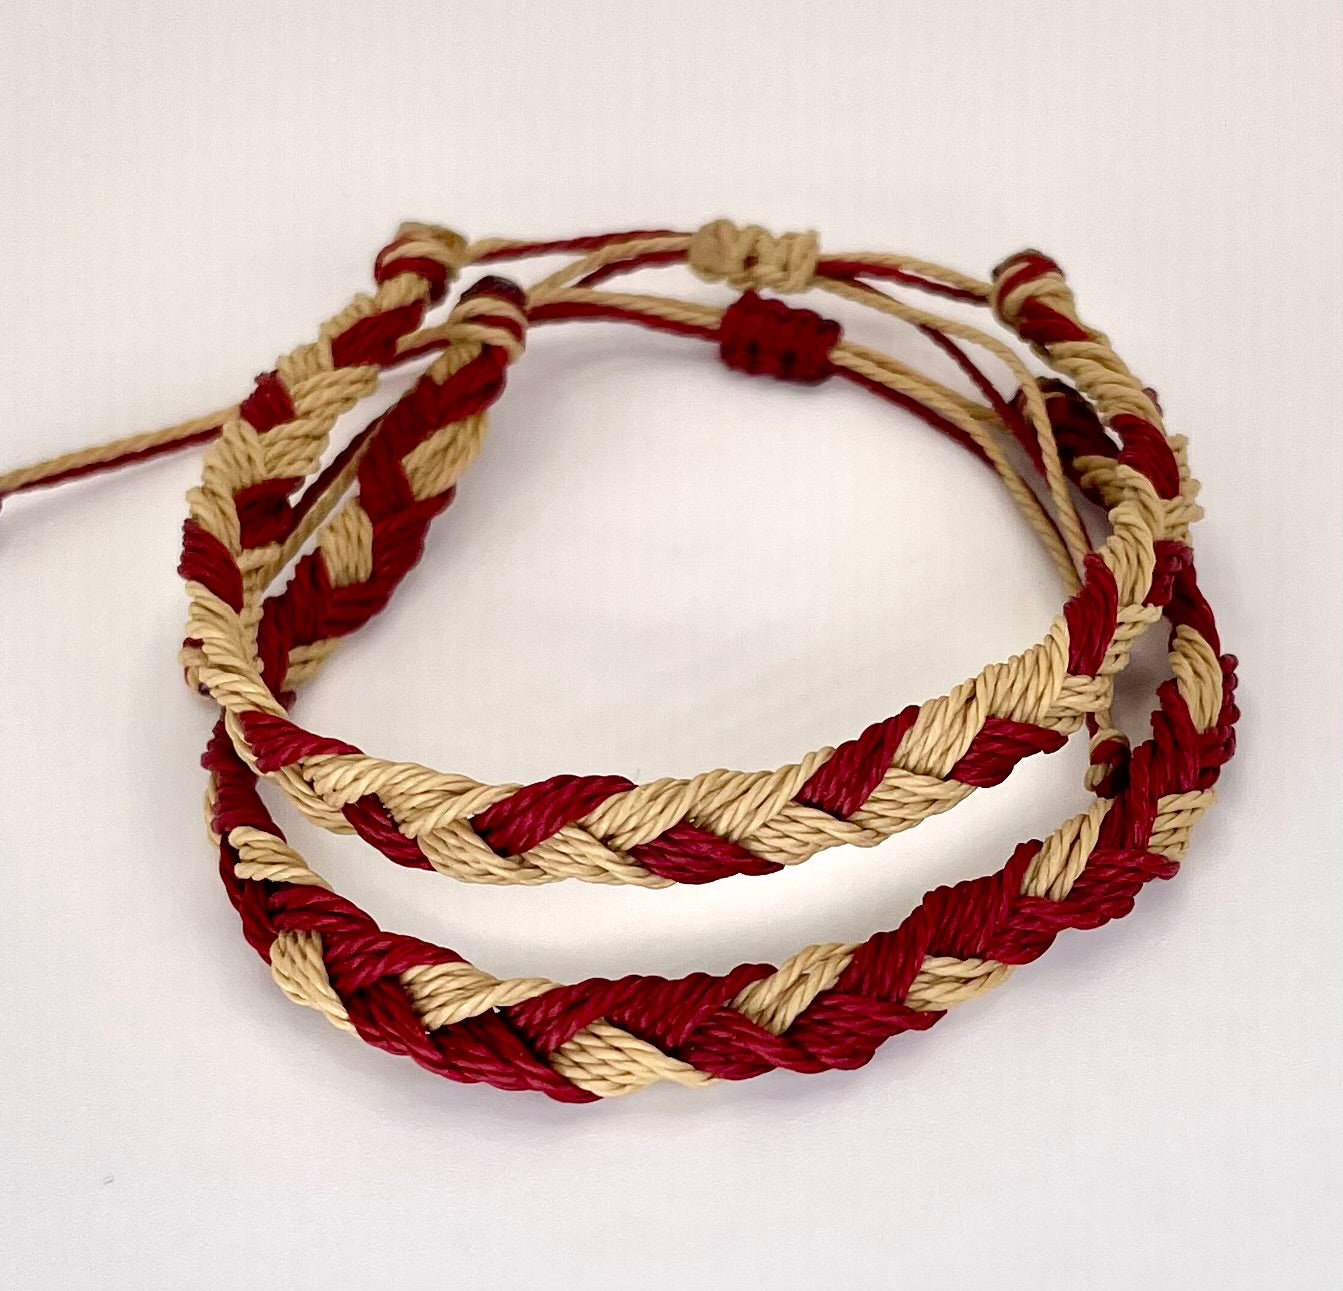 Garnet & Gold Team Color Braided Bracelets - Set of 2